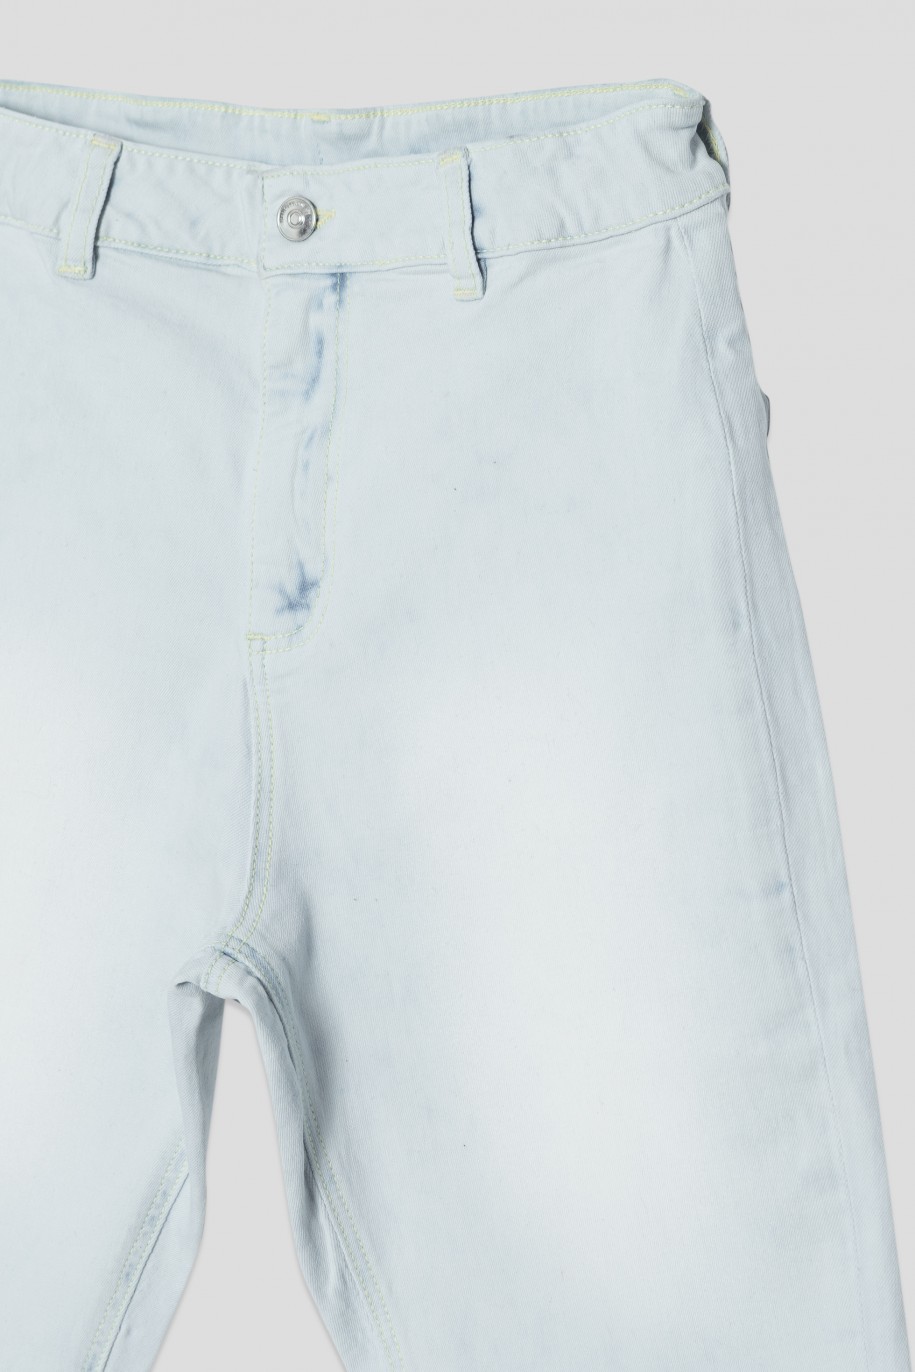 Krótkie jeansowe spodenki dla dziewczyny - 41573